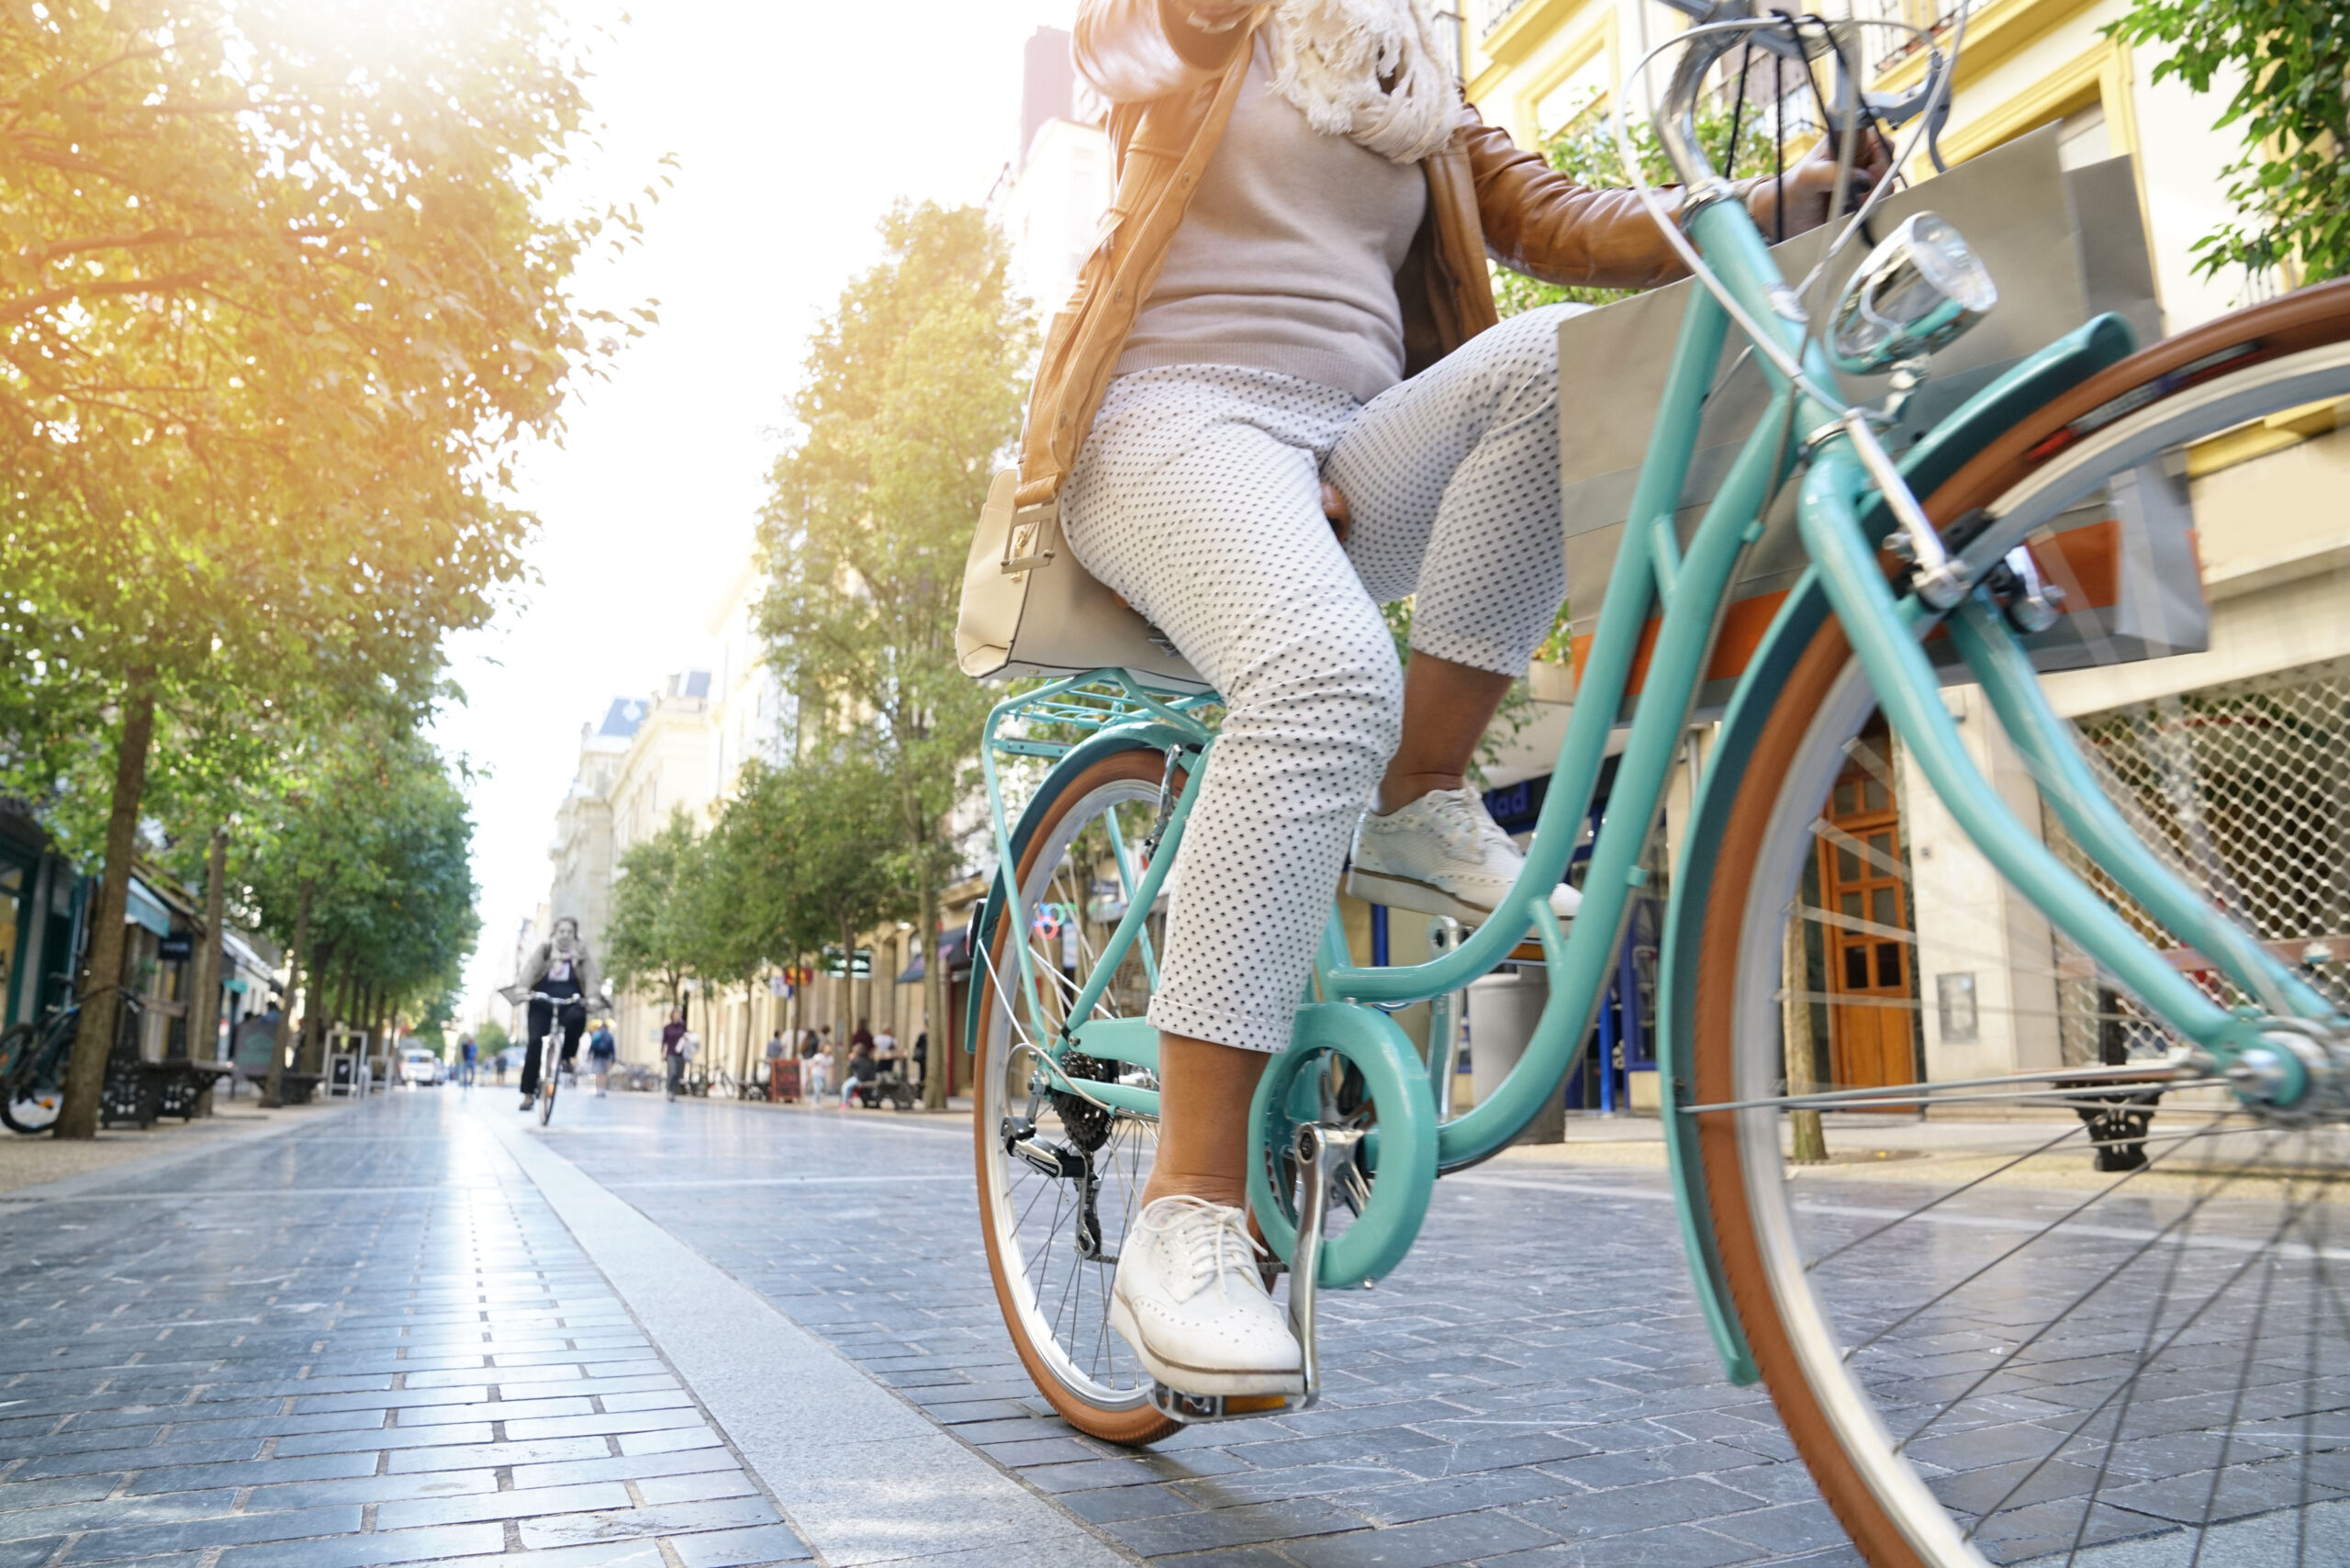 Women riding a pastel blue city bike through town